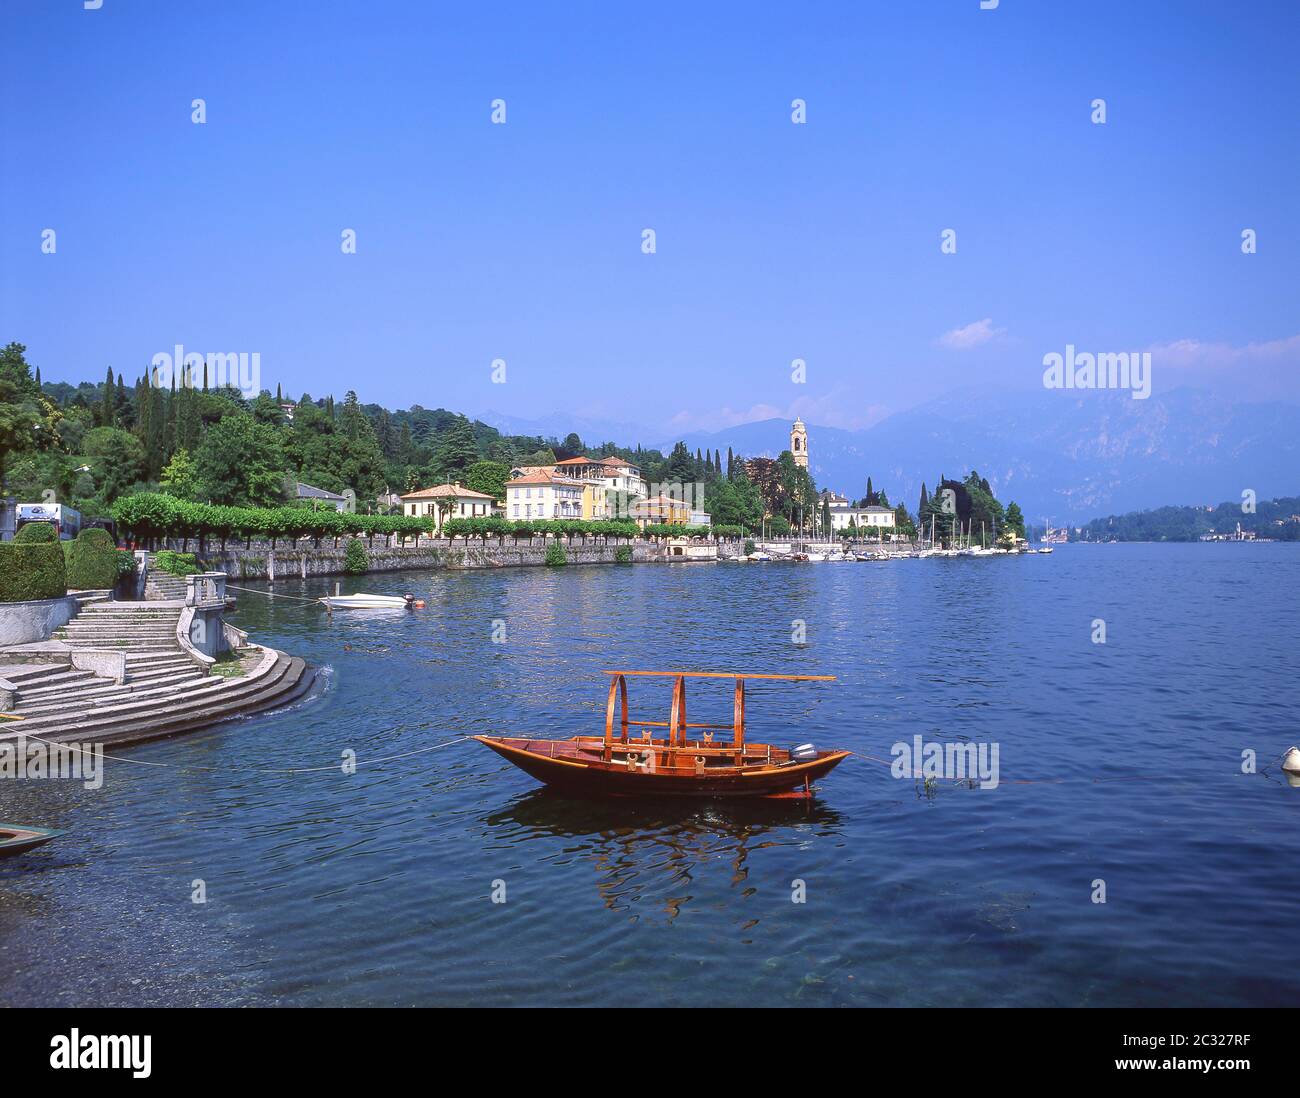 Barco tradicional de madera amarrado en el lago de como, Tremezzo, Provincia de como, región de Lombardía, Italia Foto de stock